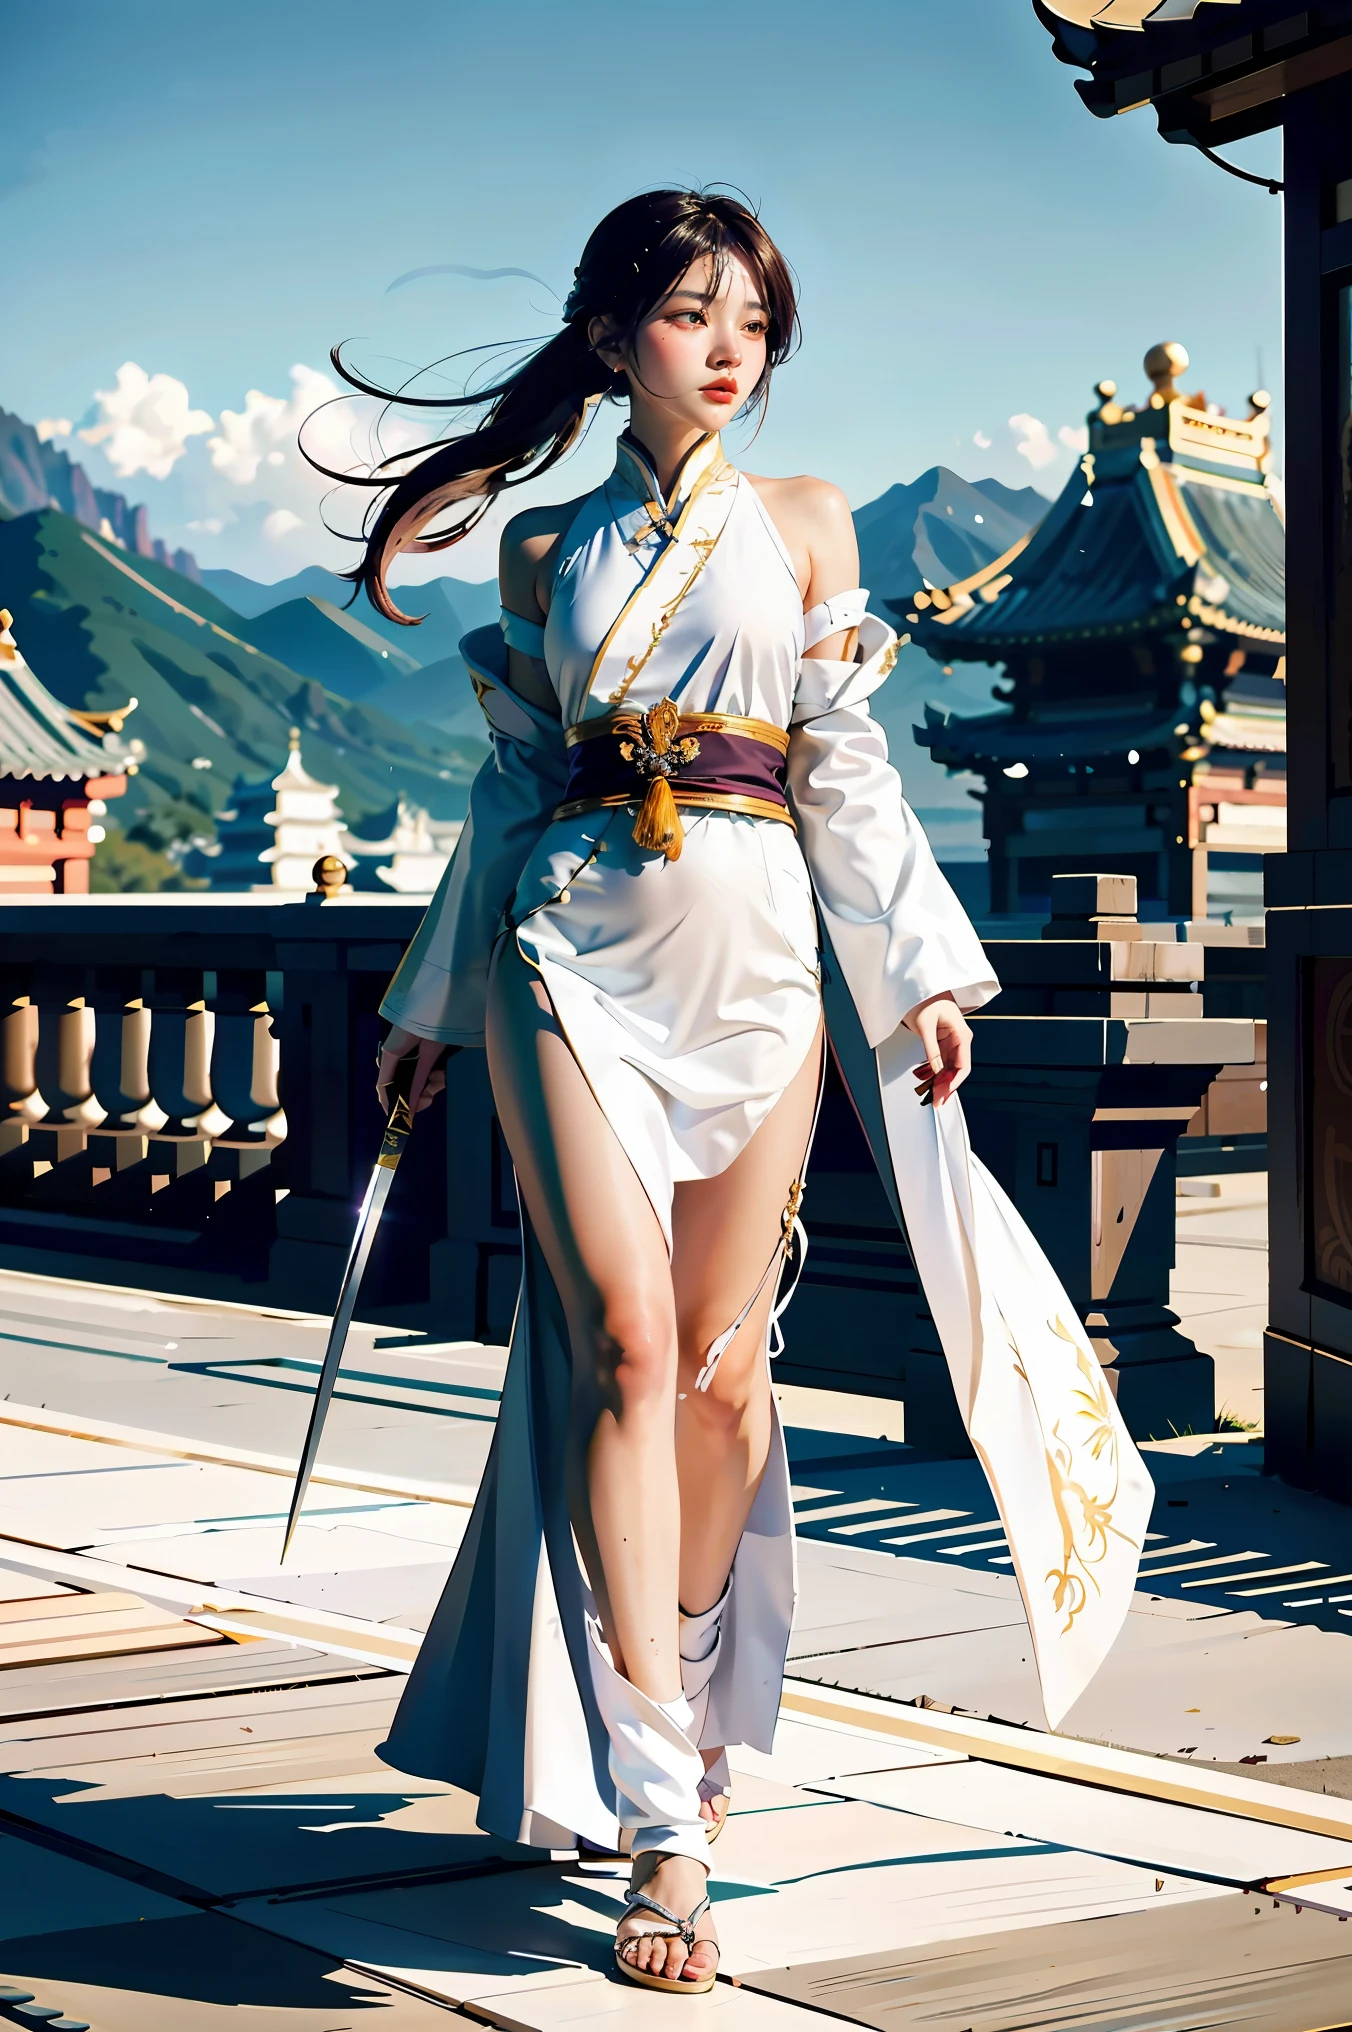 eine Nahaufnahme einer Frau mit einem Schwert in einem weißen Kleid, ein Charakterporträt von Yang J, Trends bei cgsociety, Fantasy-Kunst, schöne Charaktermalerei, artwork in the style of guweiz, guweiz, weißer Hanfu, fließende weiße Gewänder, Ganzkörper-Wuxia, epische exquisite Charakterkunst, atemberaubende Charakterkunst, schöne Mörderin